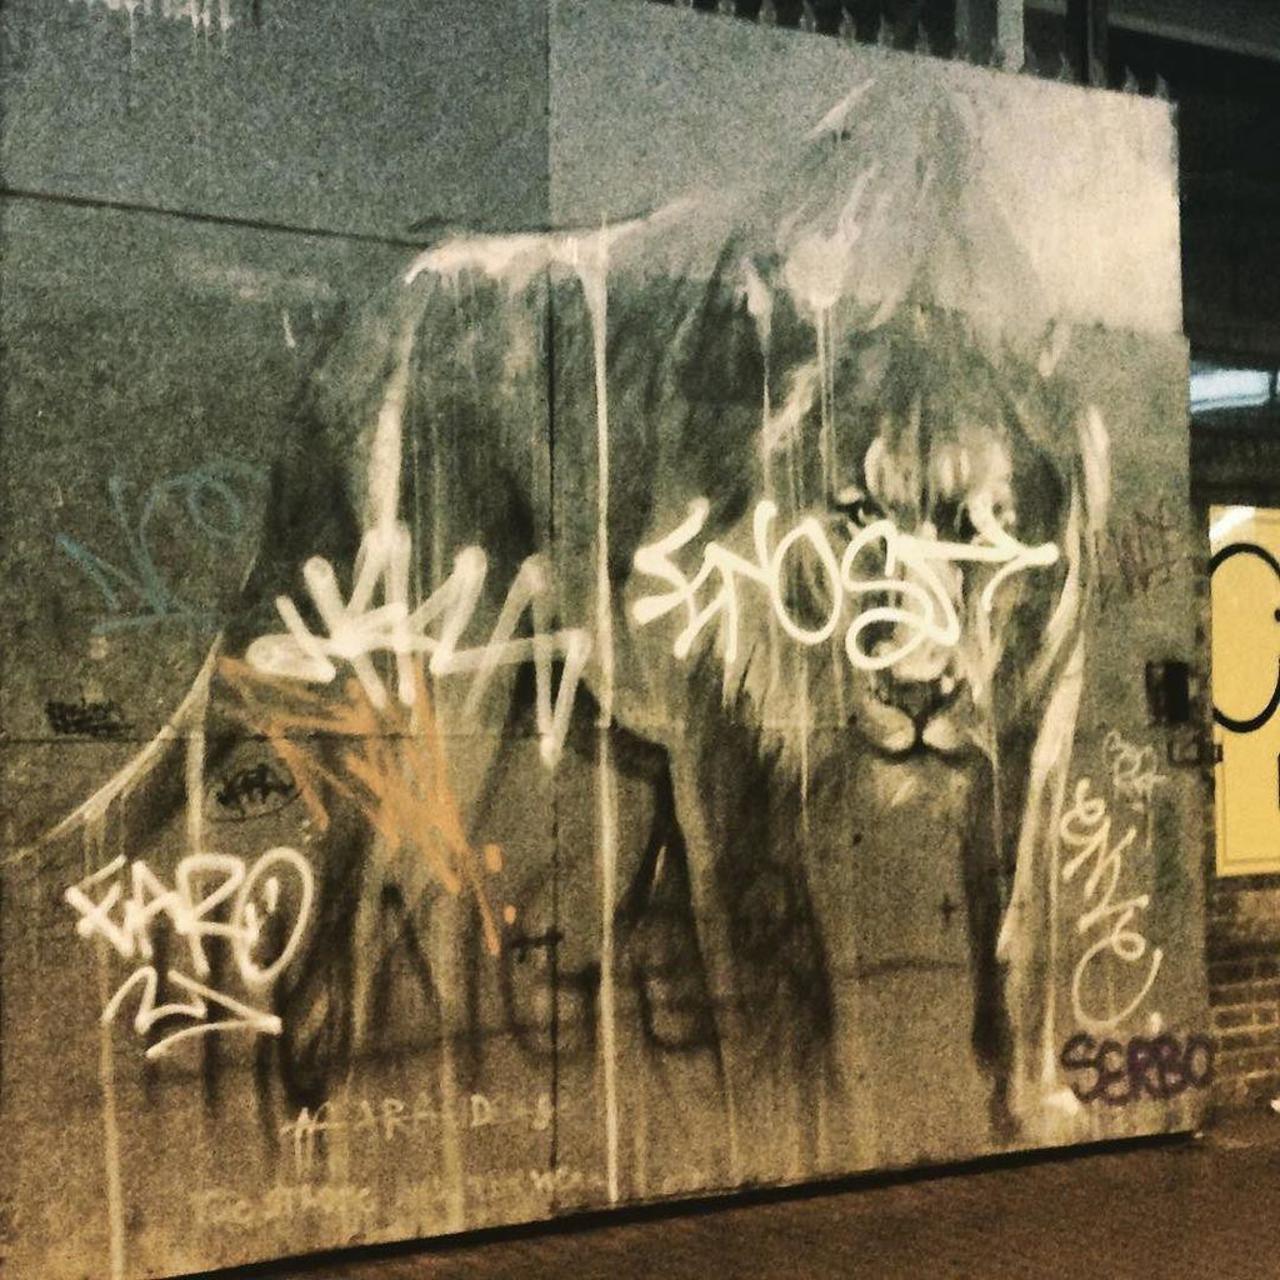 RT @artpushr: via #bnzene "http://ift.tt/1FGlSbM" #graffiti #streetart http://t.co/rys63jkOZ4